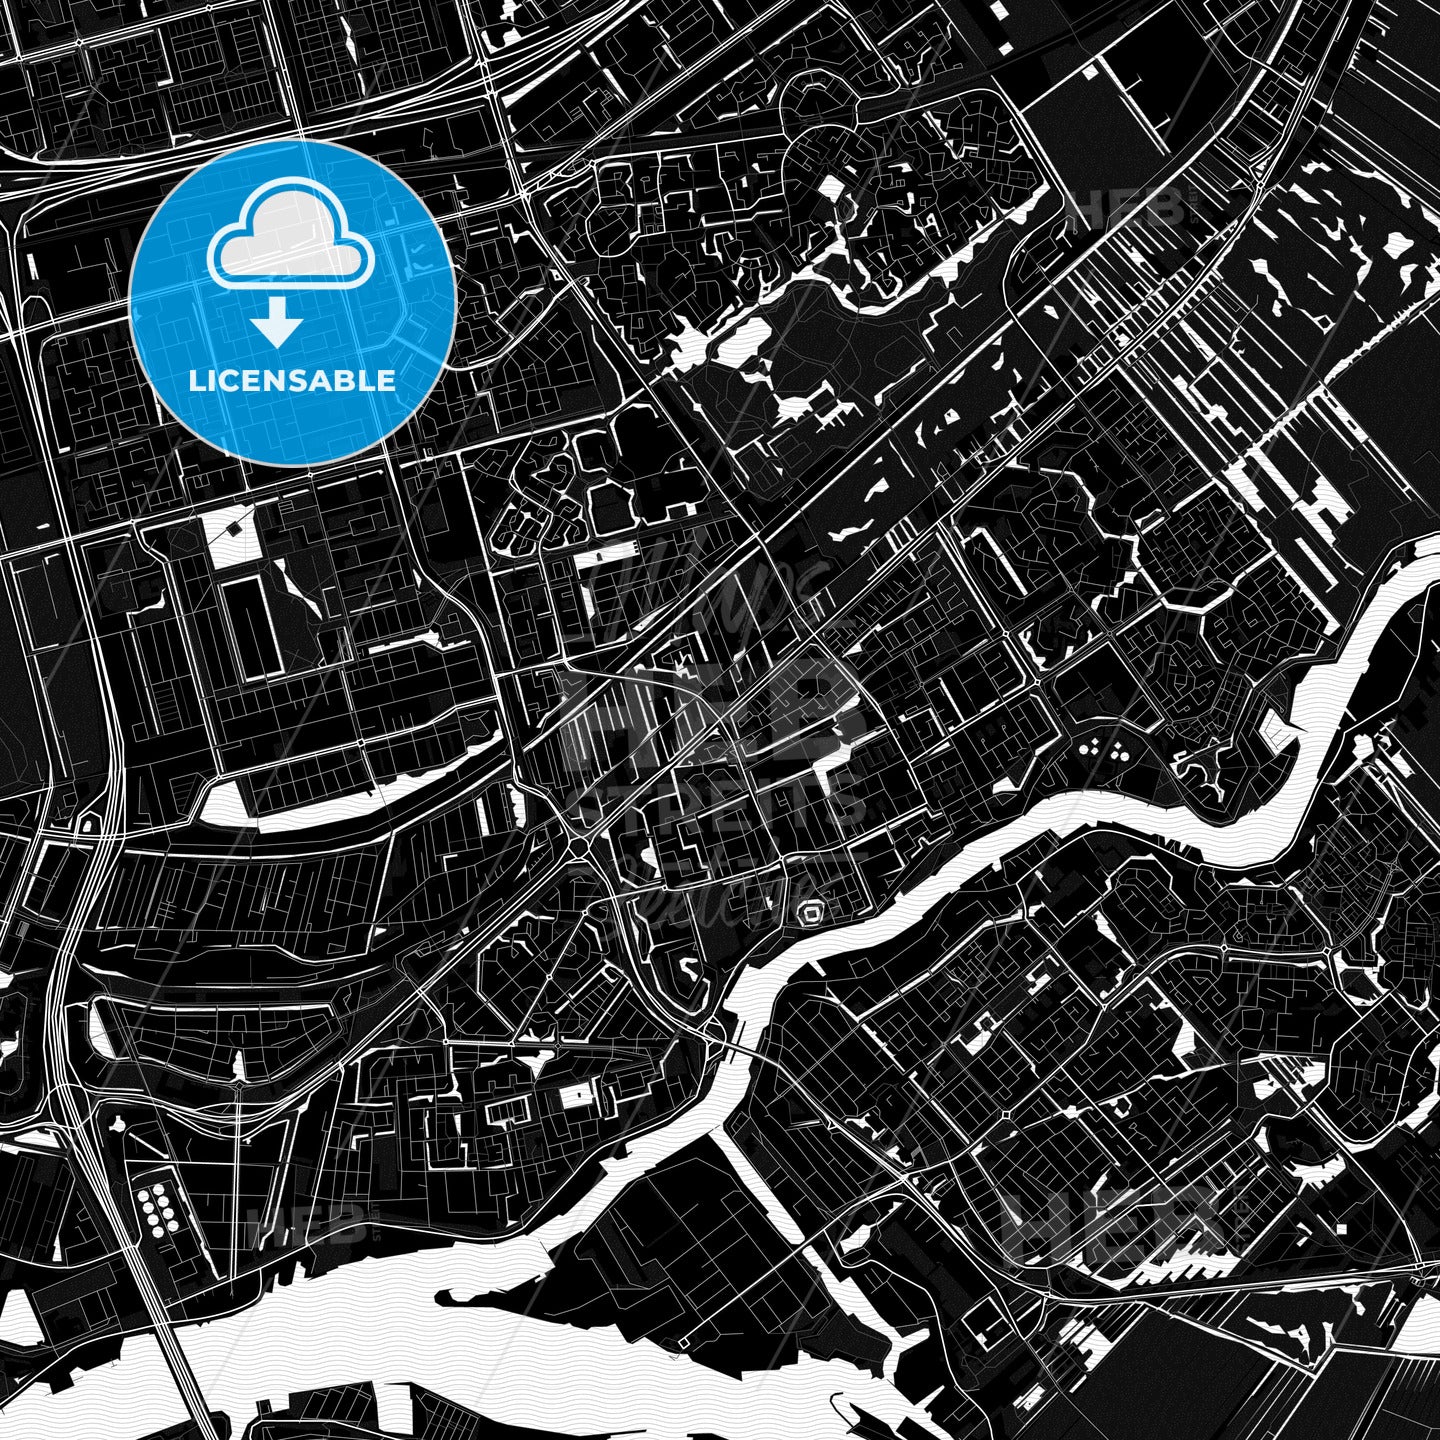 Capelle aan den IJssel, Netherlands PDF map